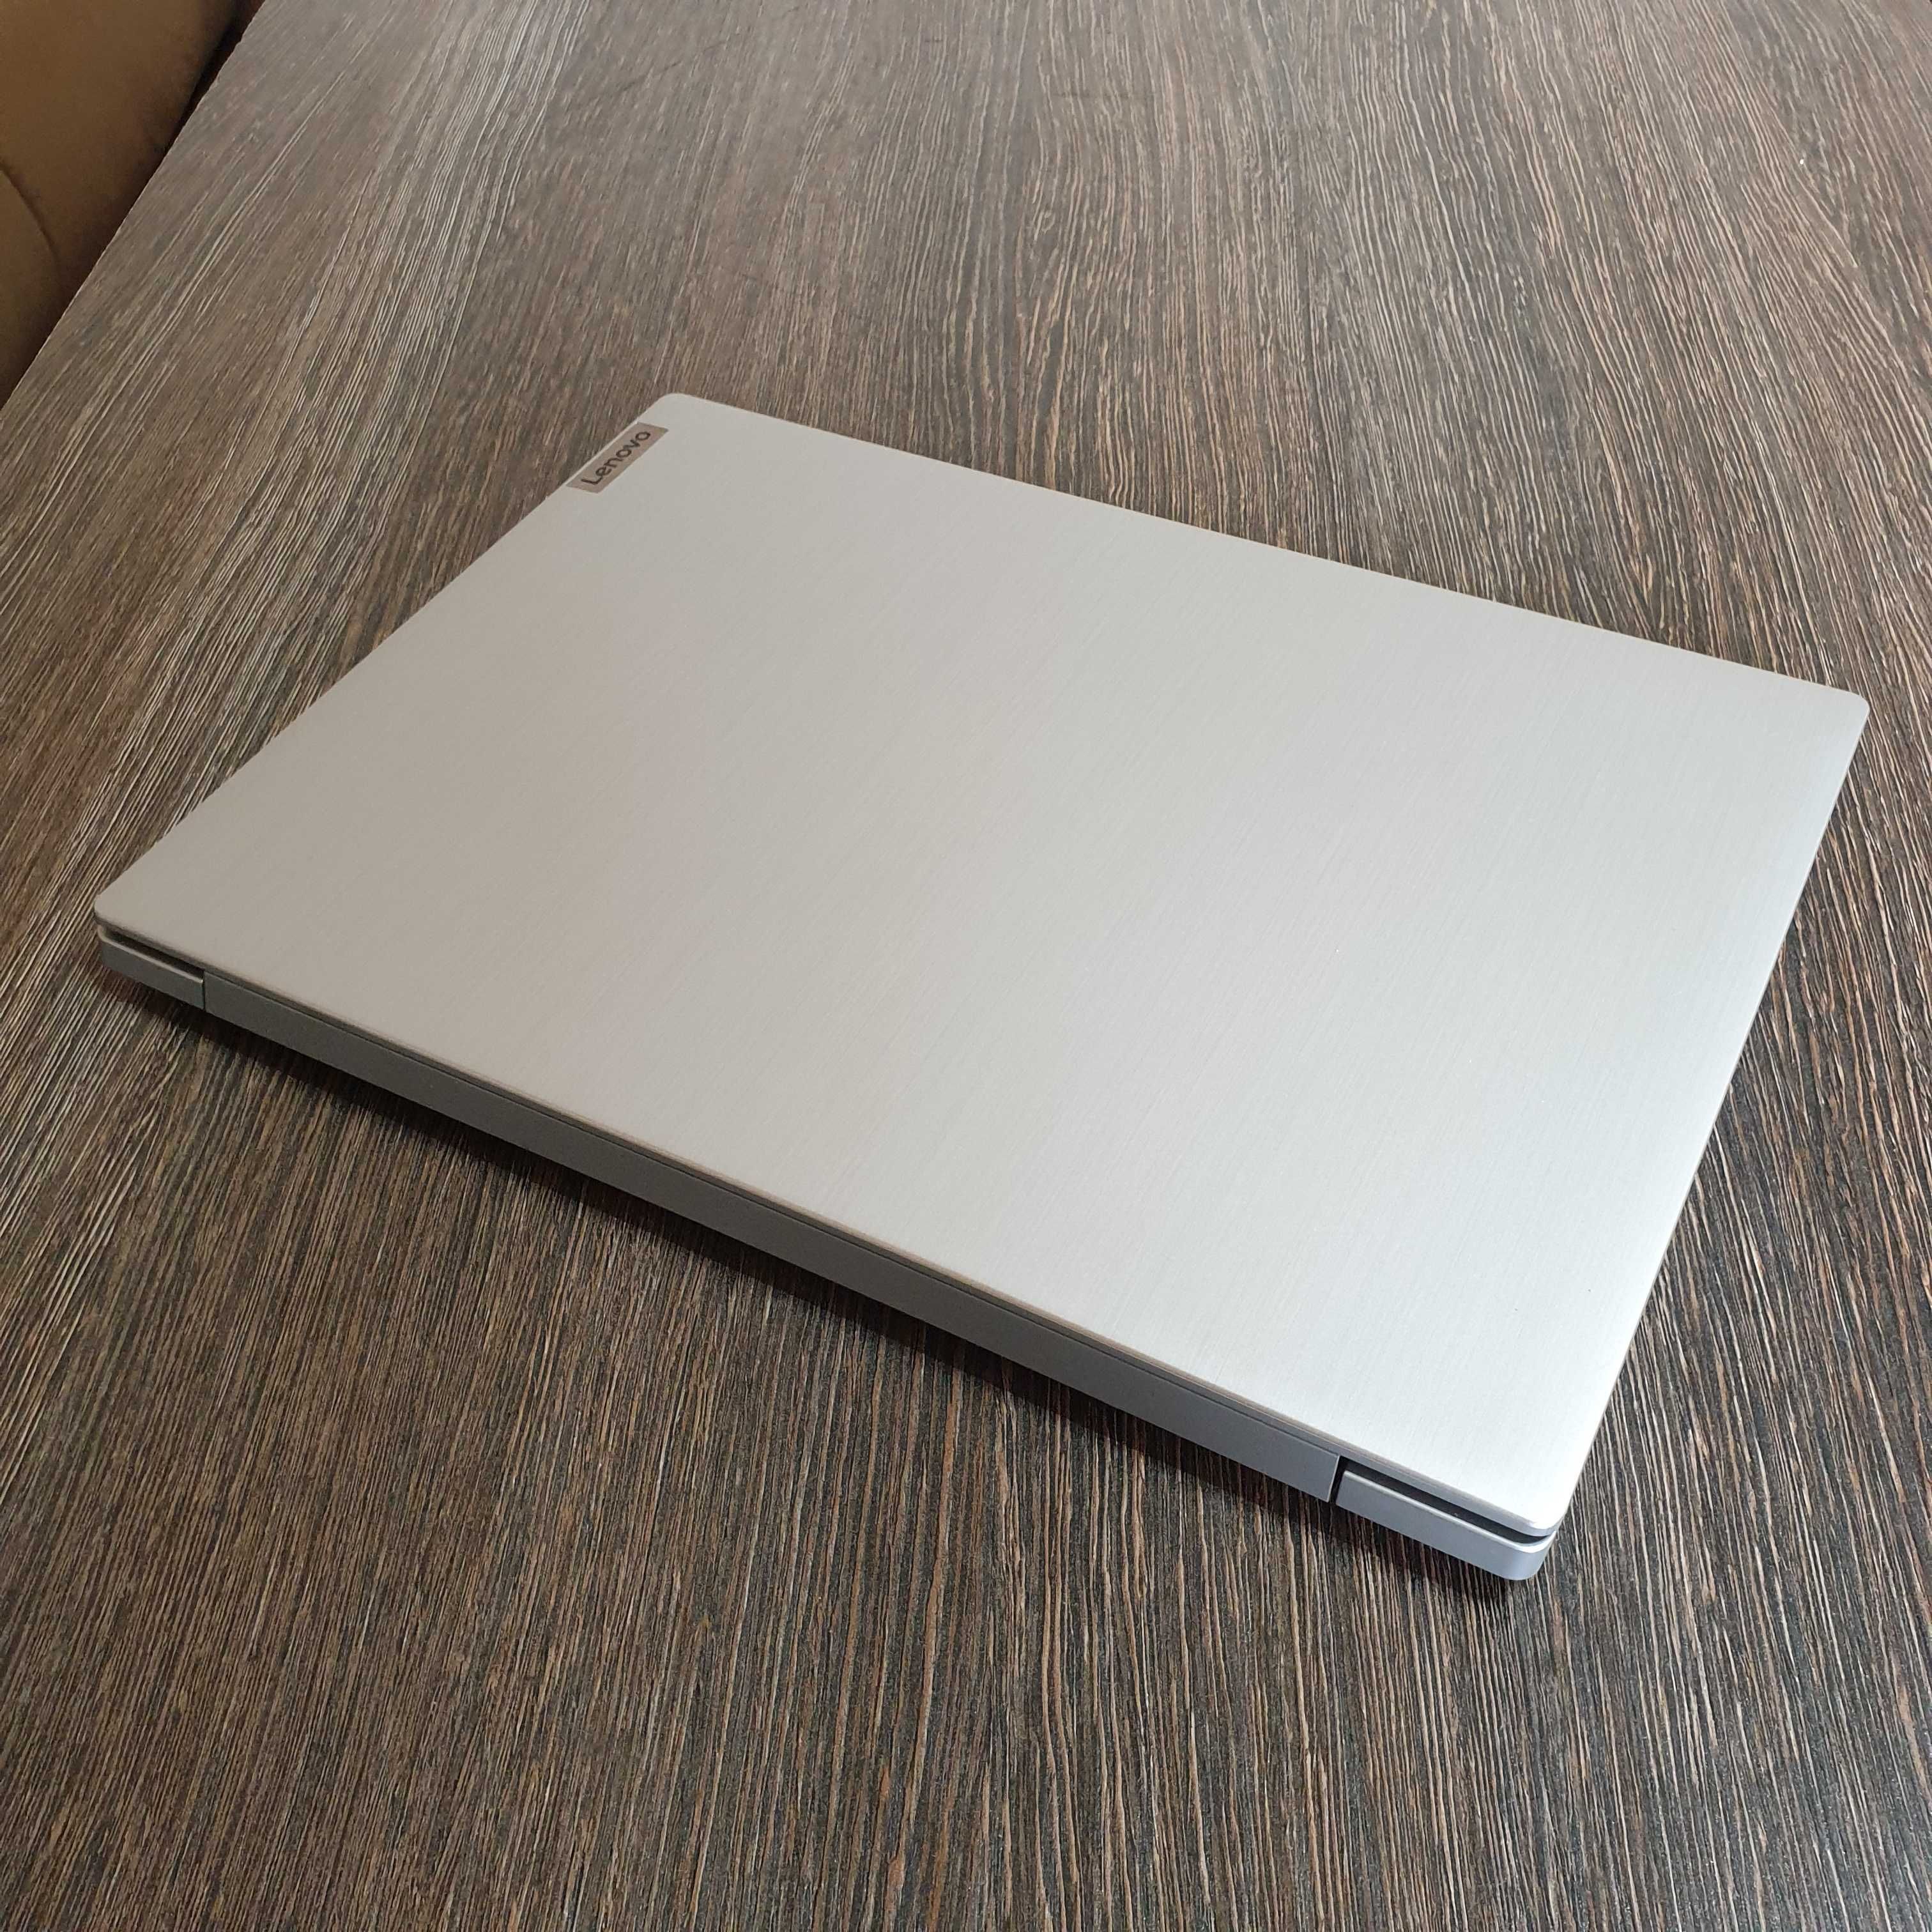 мощный i3 ноутбук Lenovo IdeaPad 3, для графических и офисных